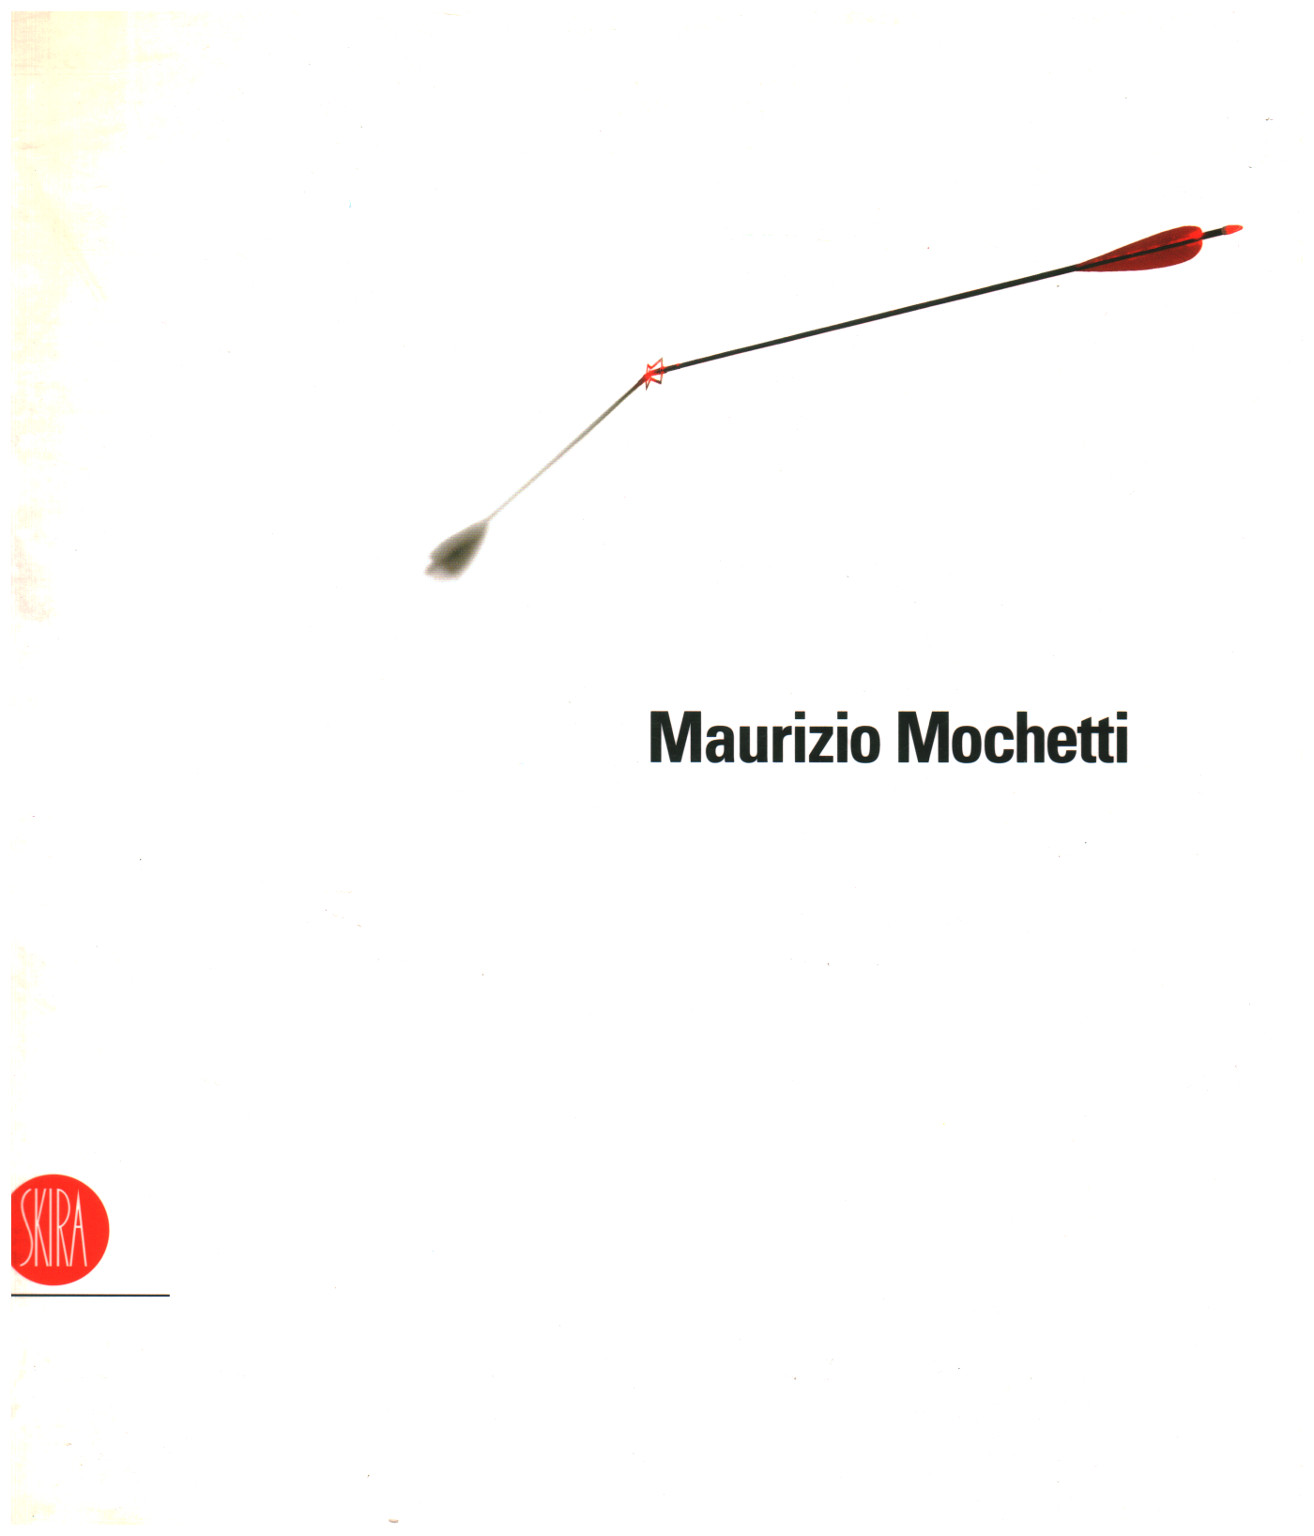 Maurizio Mochetti, s.a.